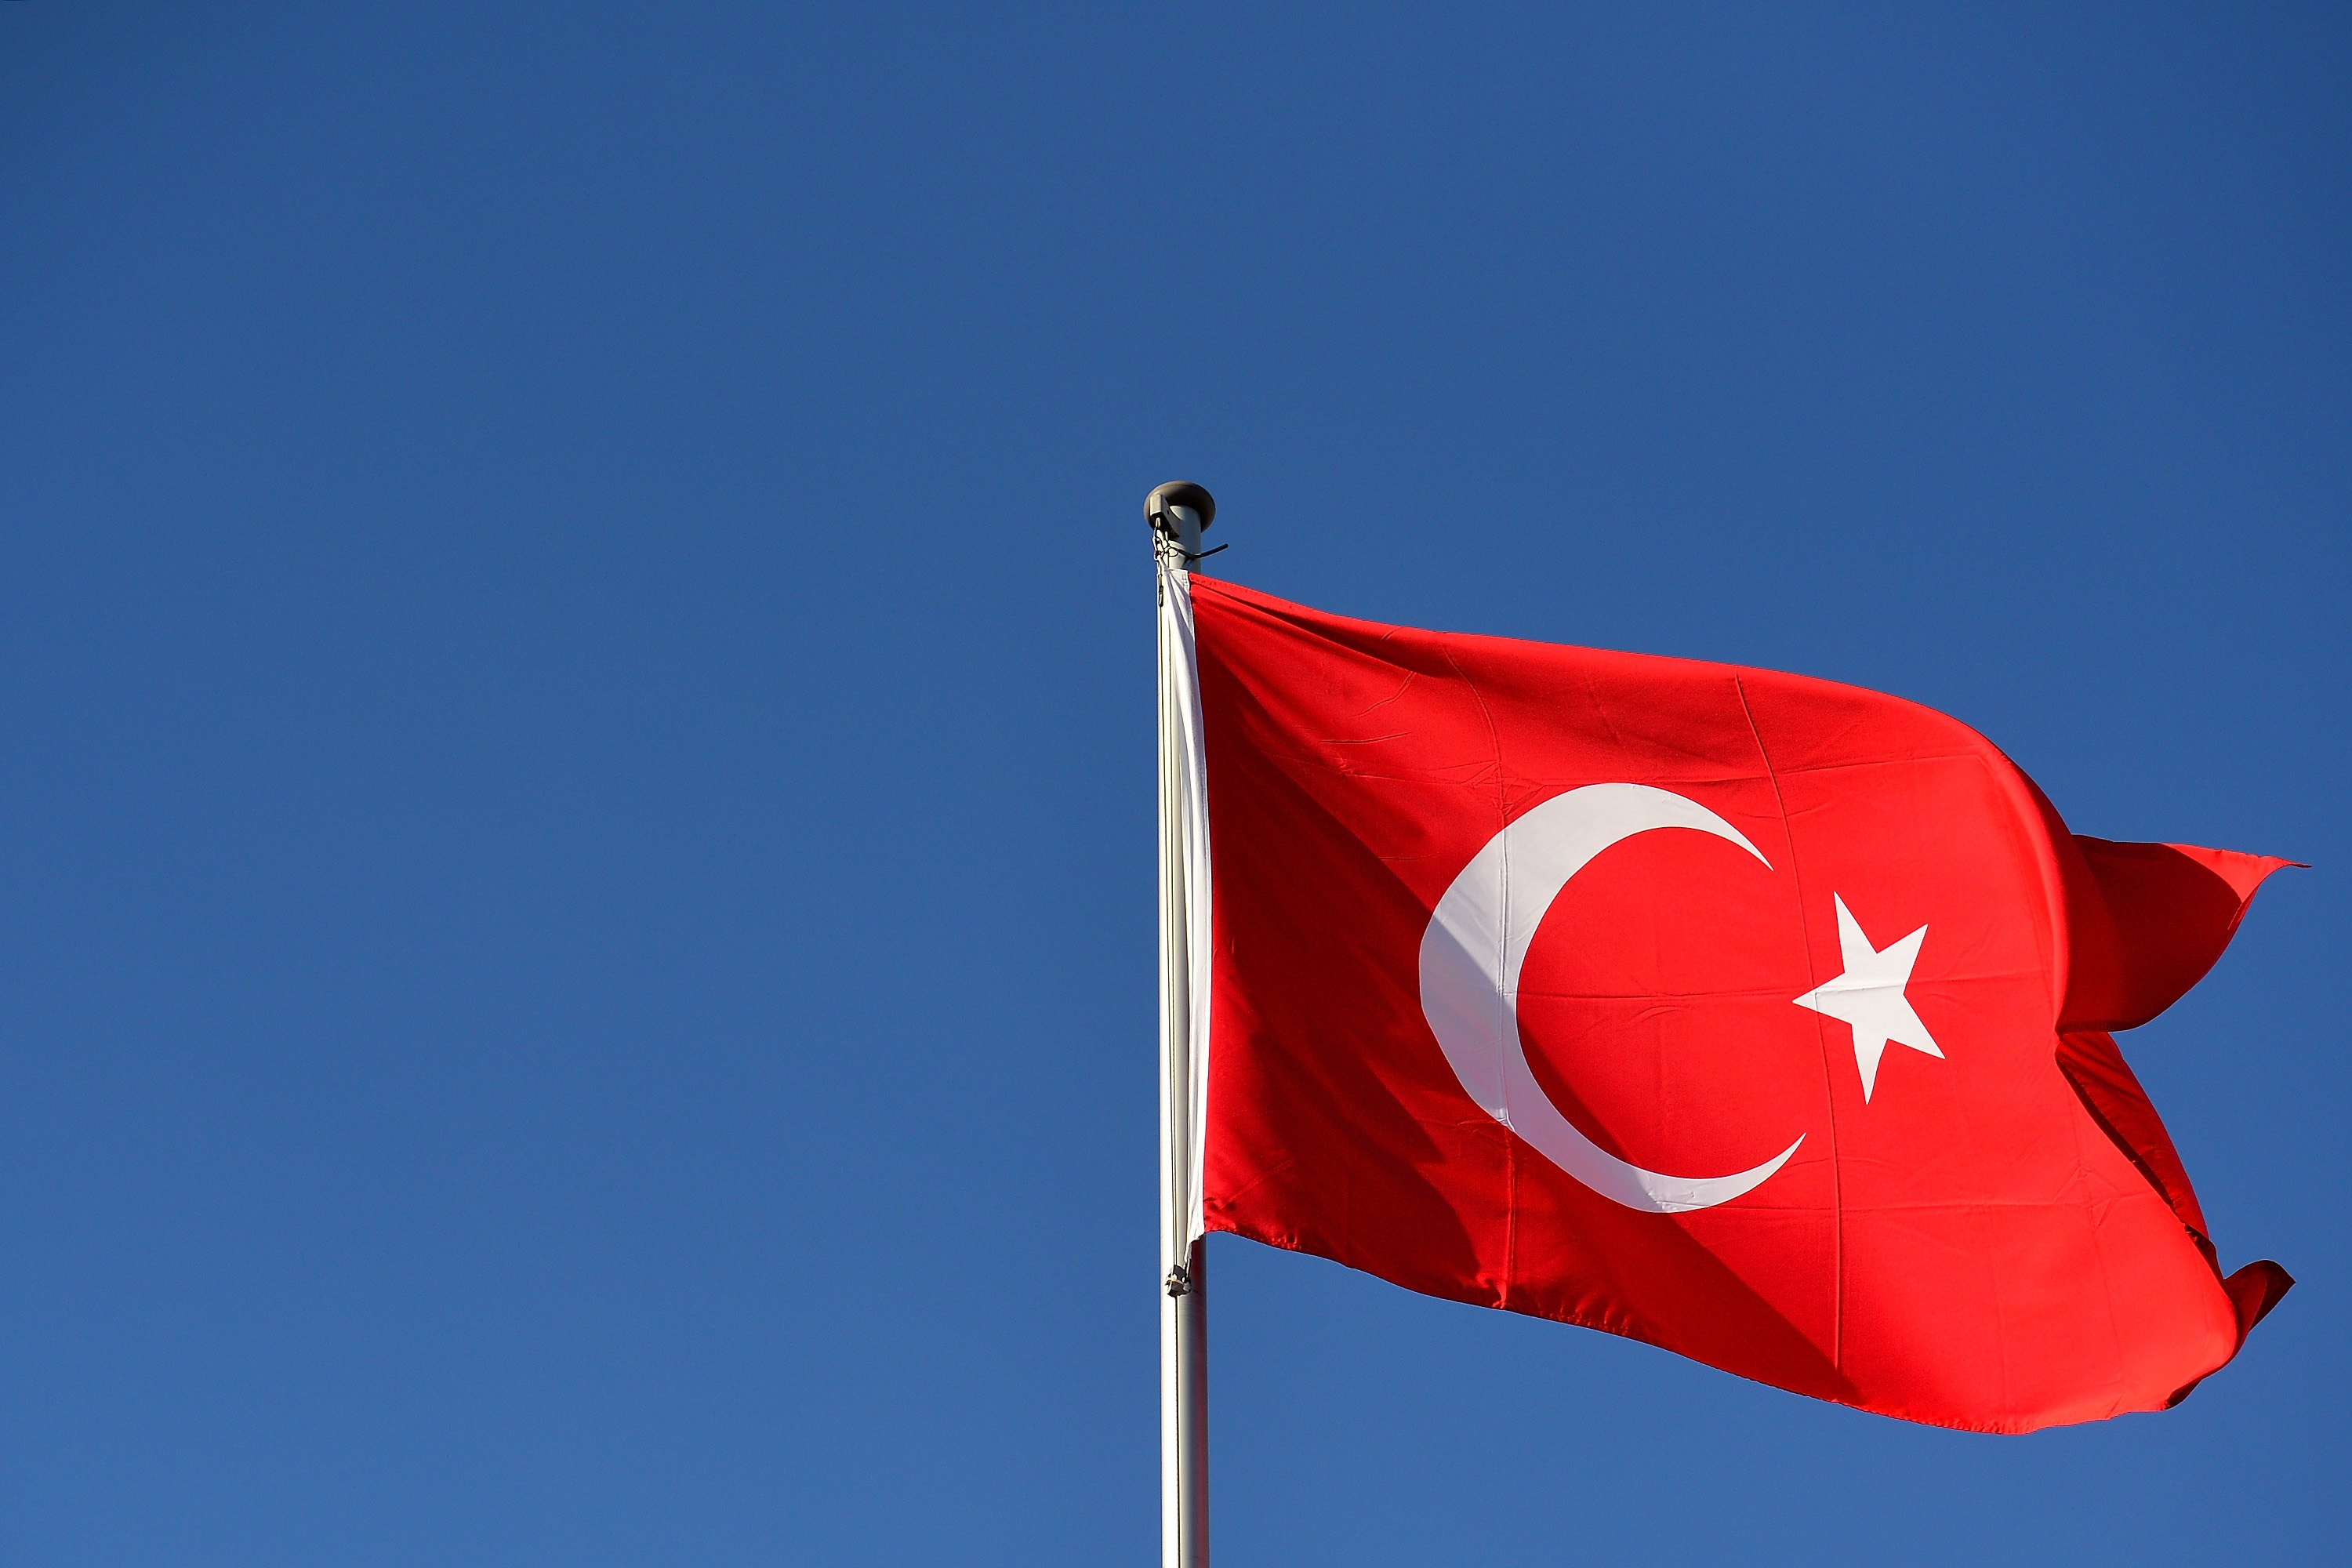 Πάνω από 600 τούρκοι αξιωματούχοι έχουν υποβάλει αίτηση ασύλου στη Γερμανία